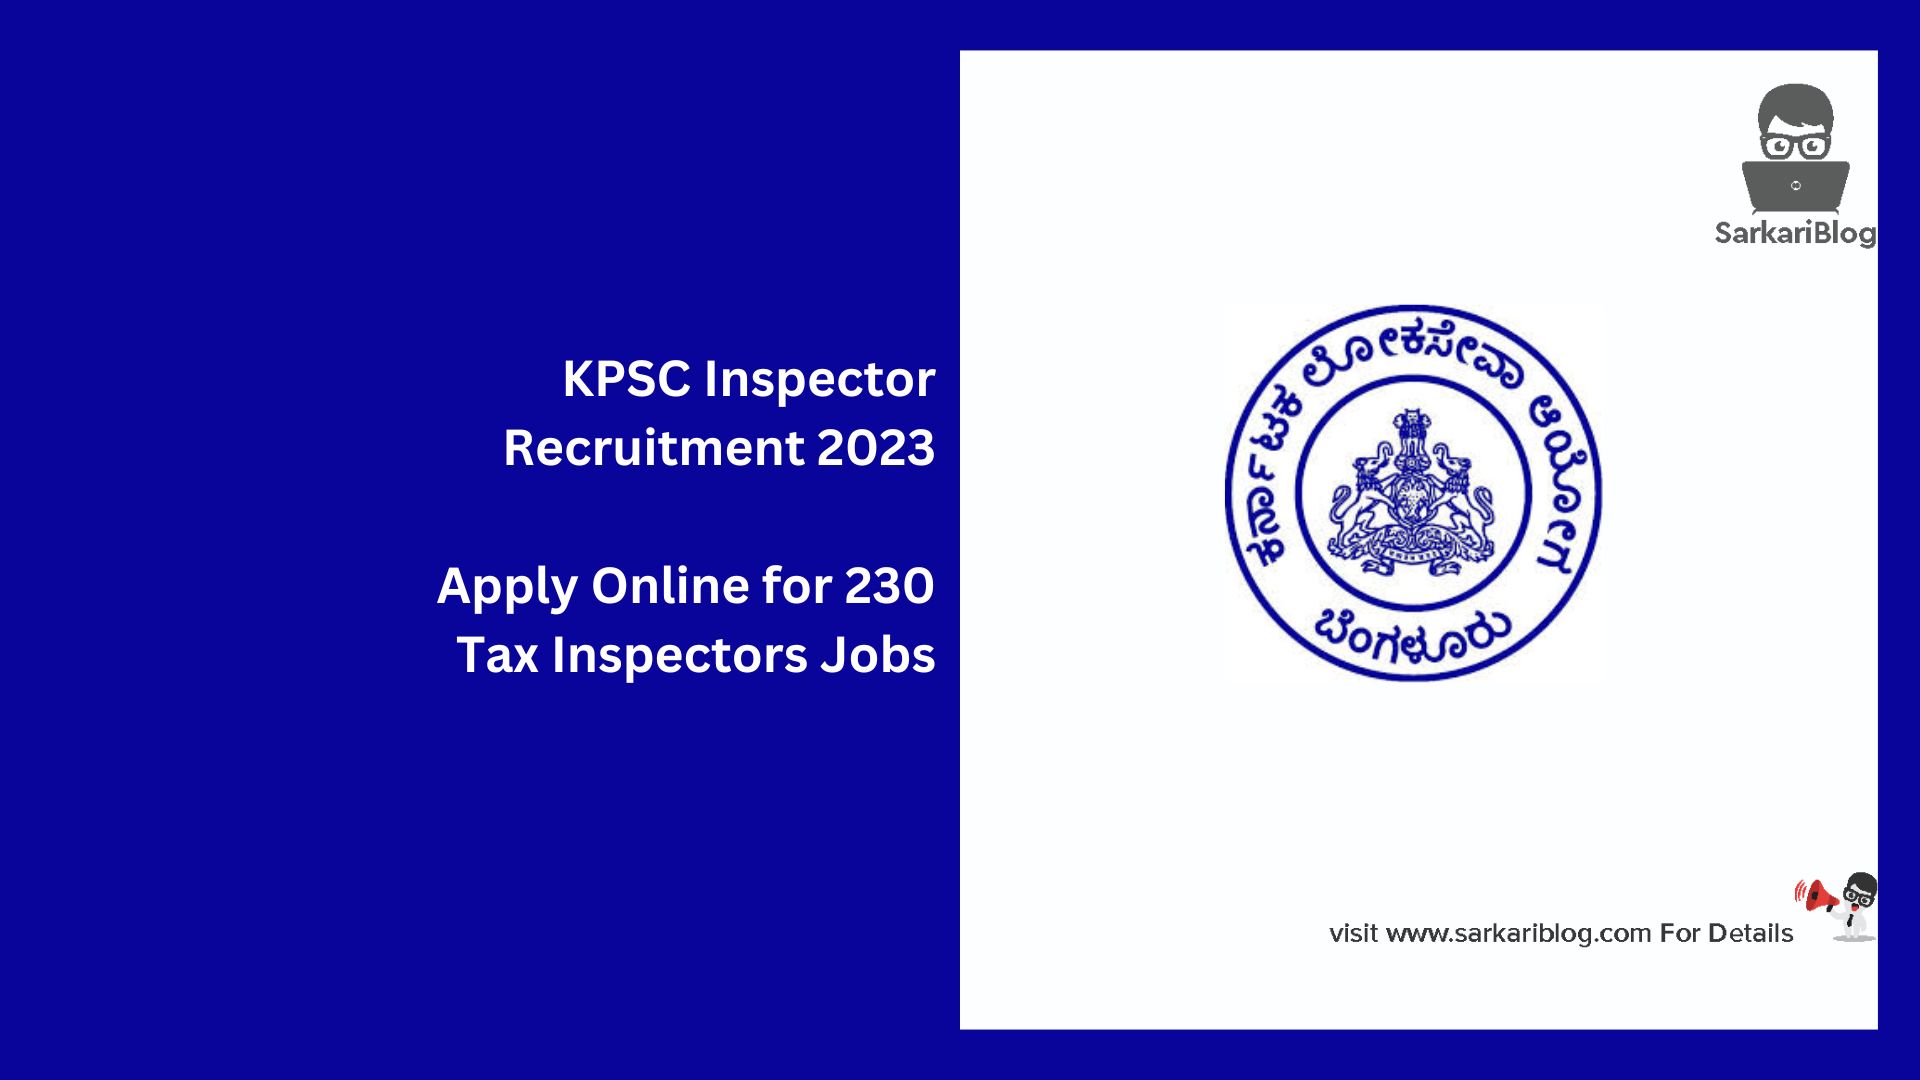 KPSC Inspector Recruitment 2023